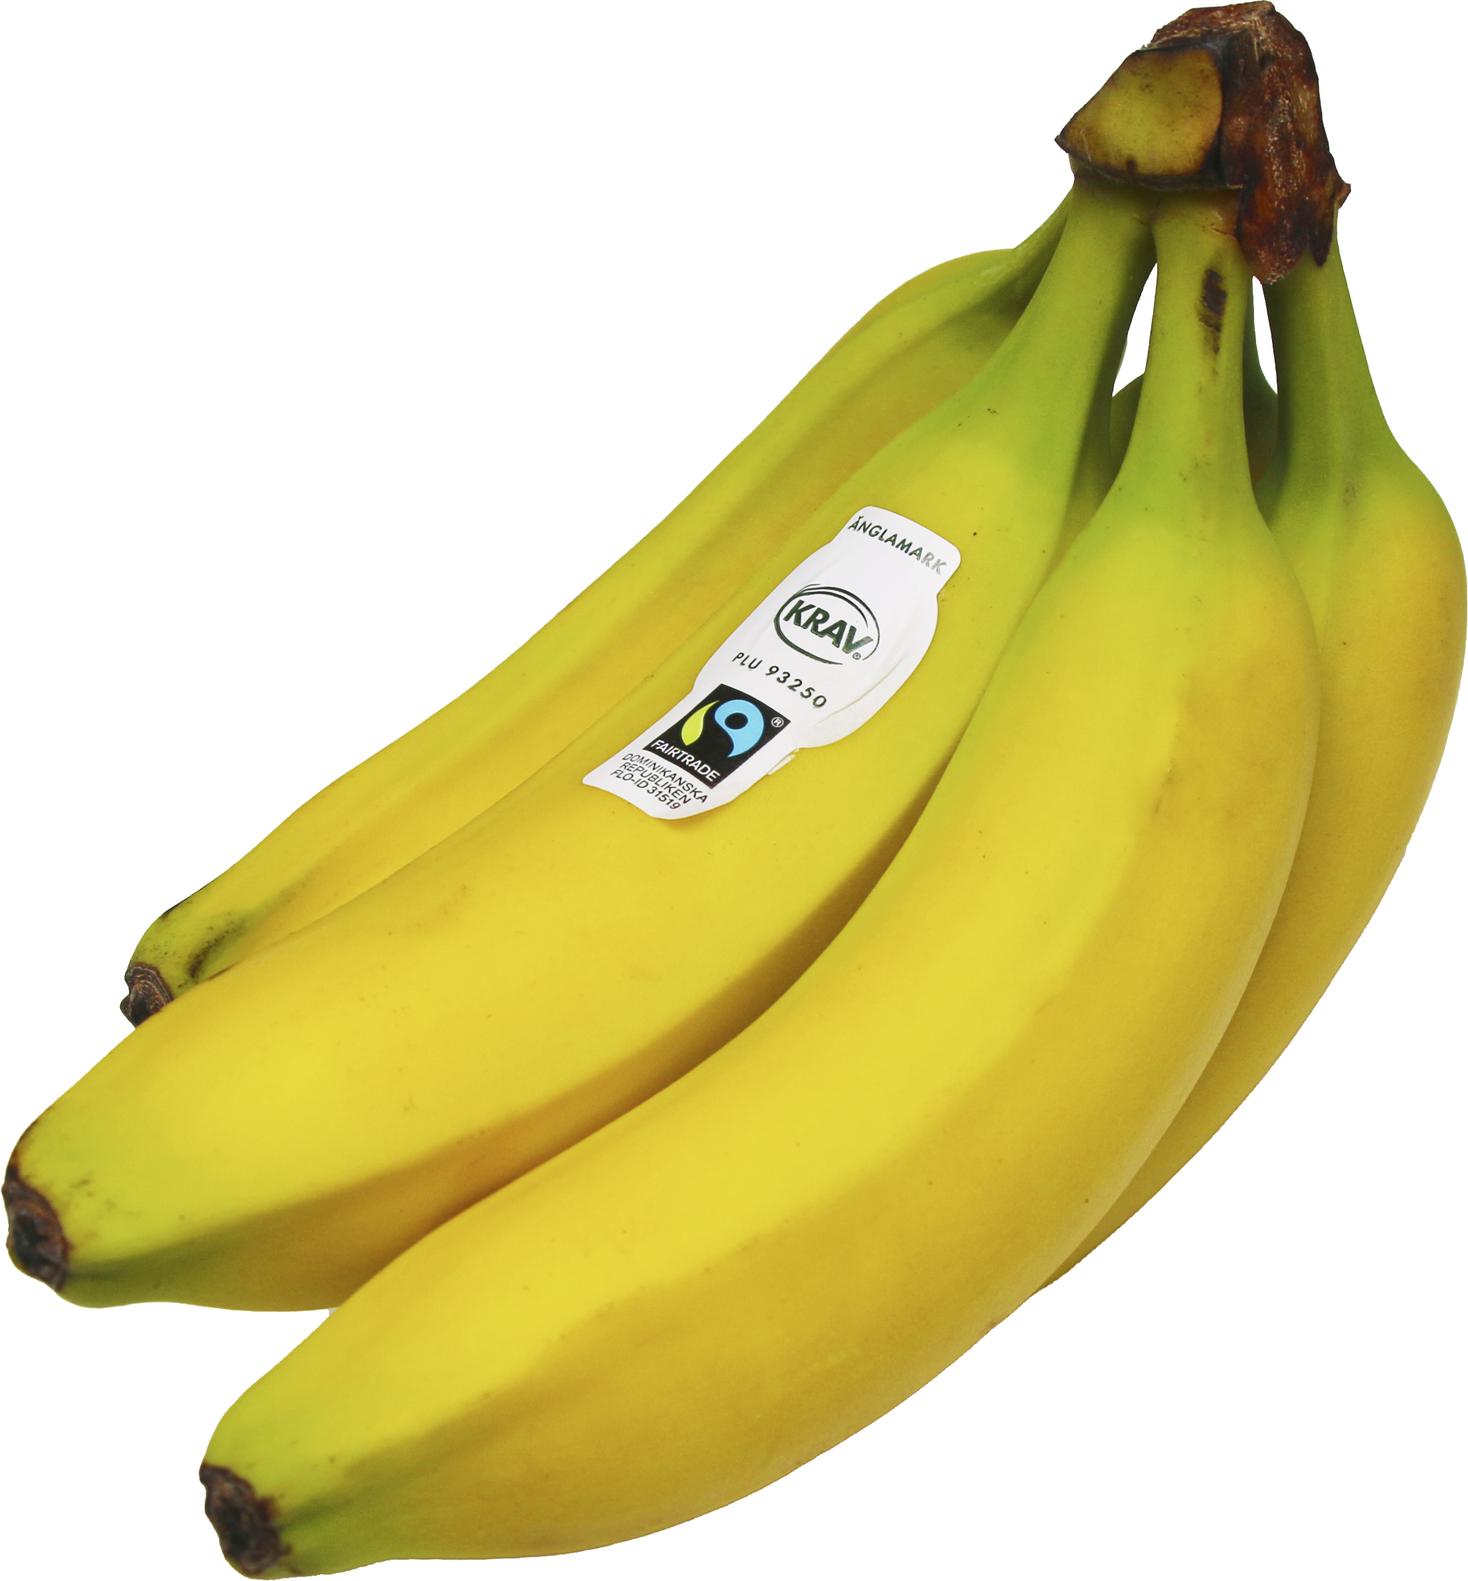 Banan Eko Fairtrade för 29,95 kr på Coop